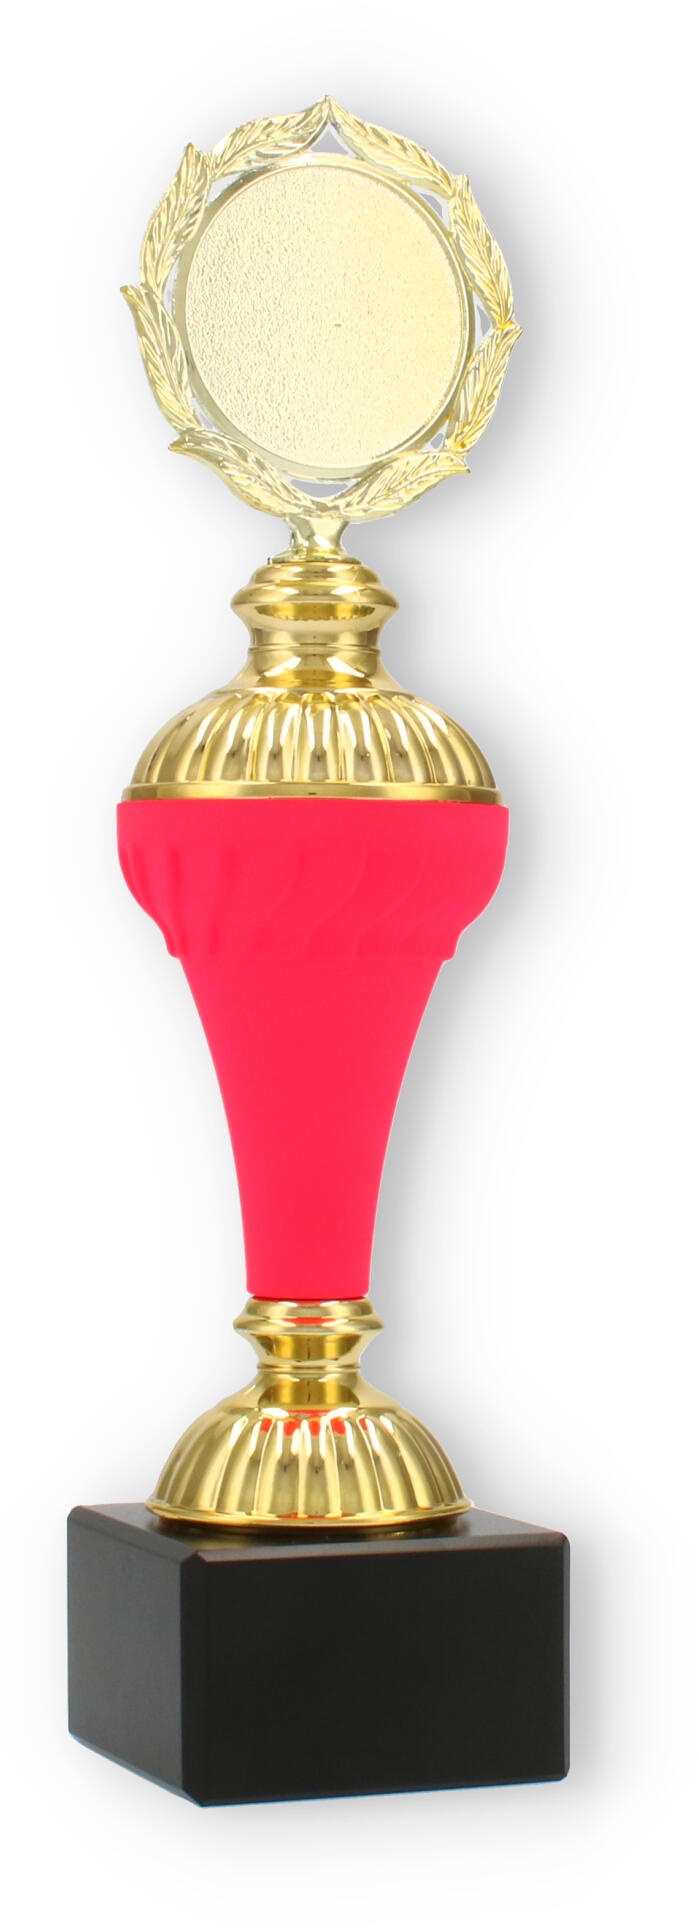 Pokal Karlie neonpink in Größe 27,5cm